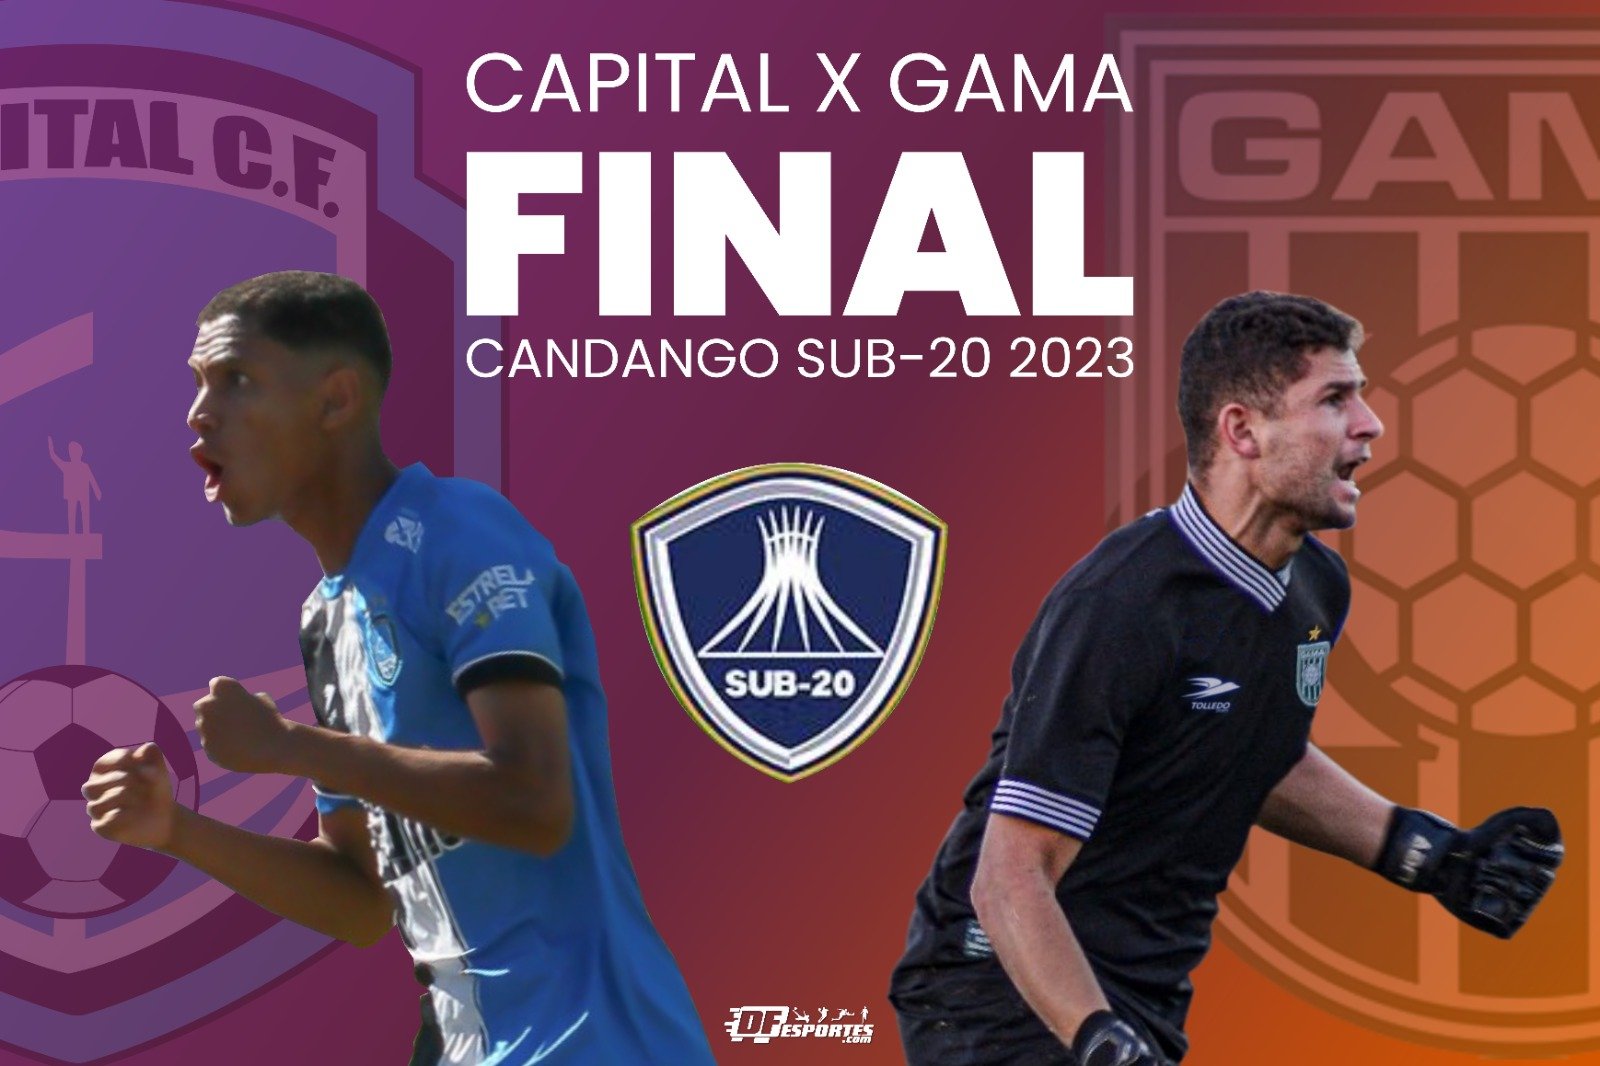 Hora da decisão! Capital e Gama decidem no Sub-20